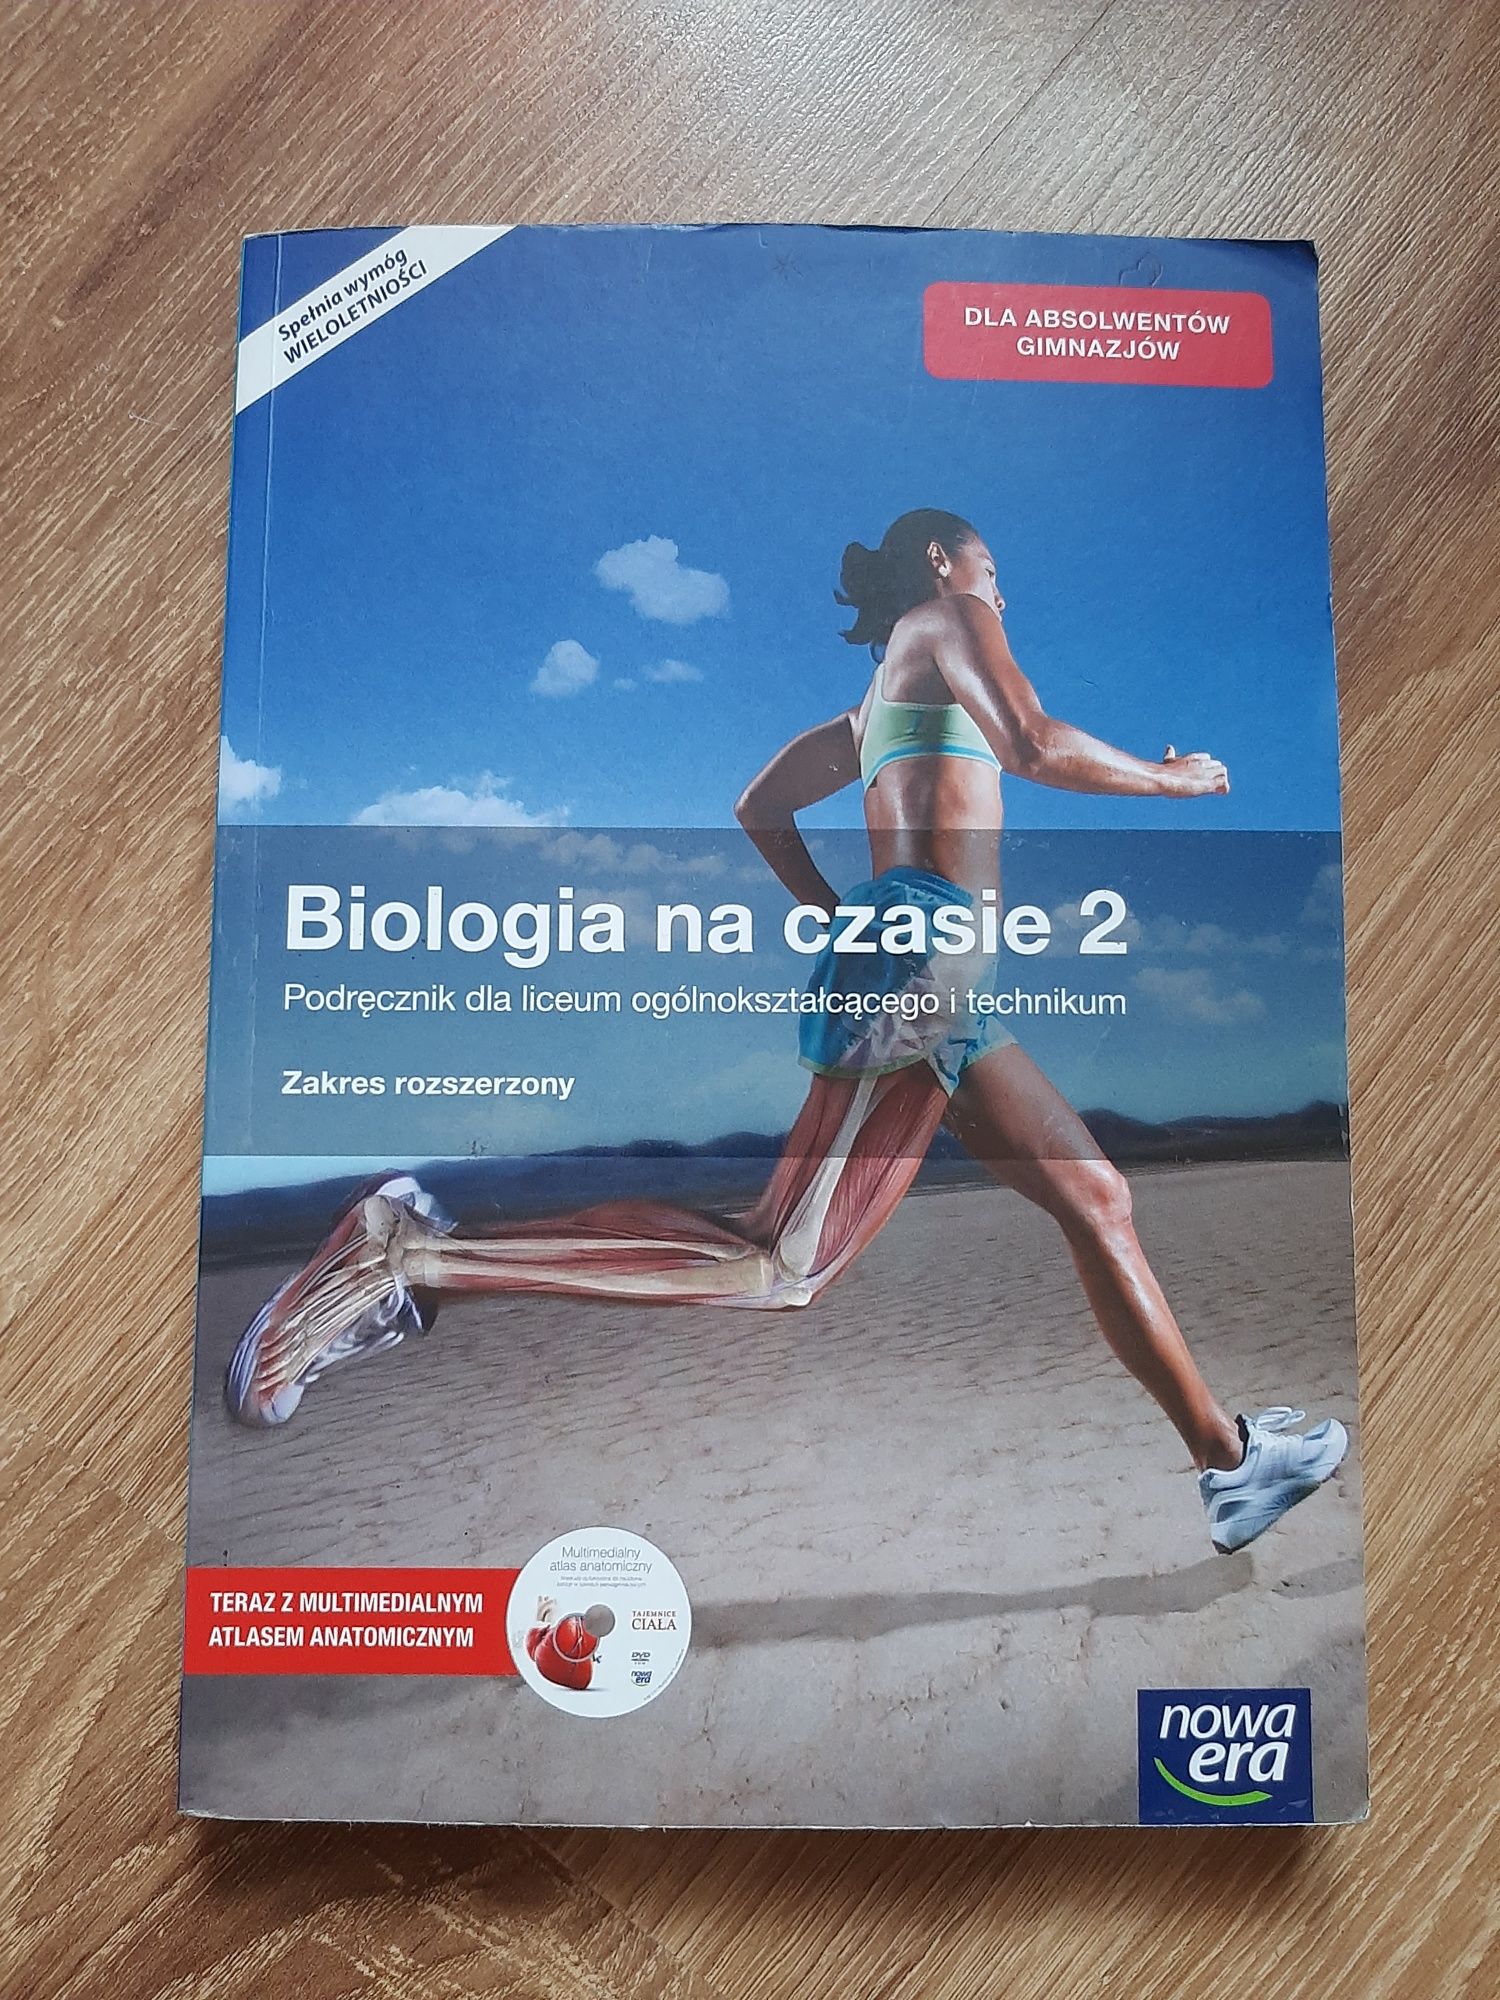 Książka do biologi "Biologia na czasie 2"